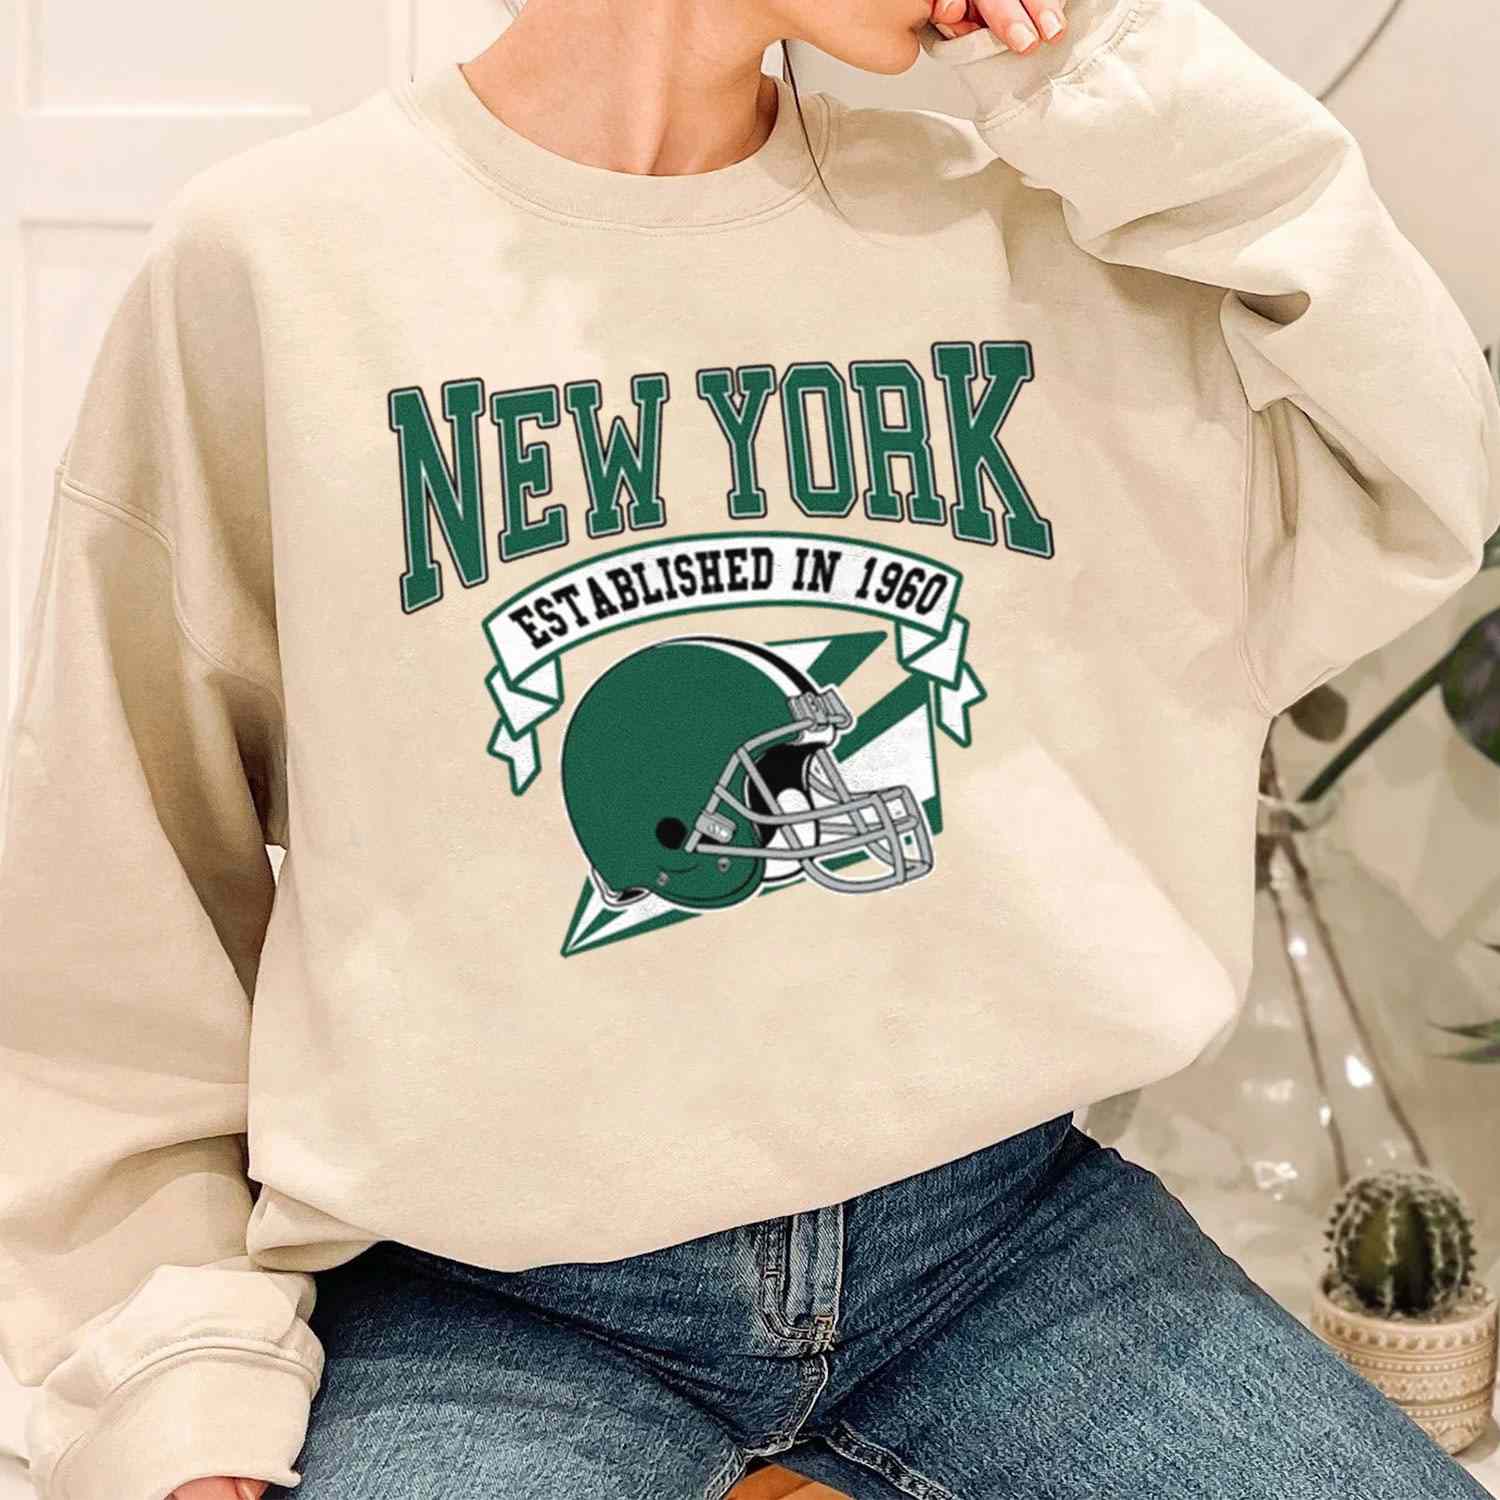 Vintage Football Team New York Jets Established In 1960 T-Shirt